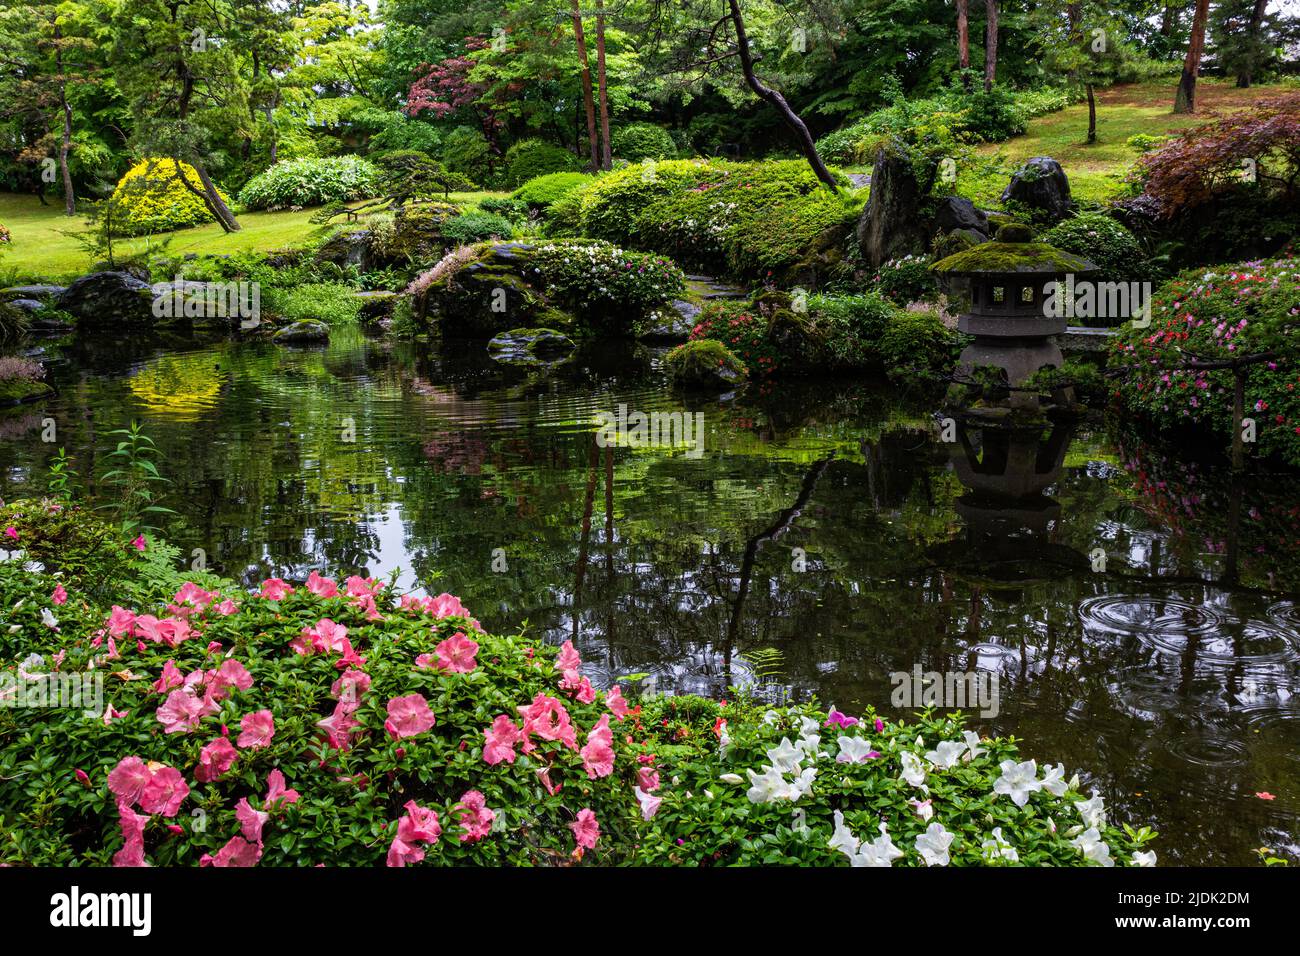 Unrei-an ist ein japanischer Garten, der auf dem Gelände der Aizu Homare Shuzo Sake Brennerei gefunden wurde. Der Garten wurde während der Showa-Zeit angelegt. Dieses g Stockfoto